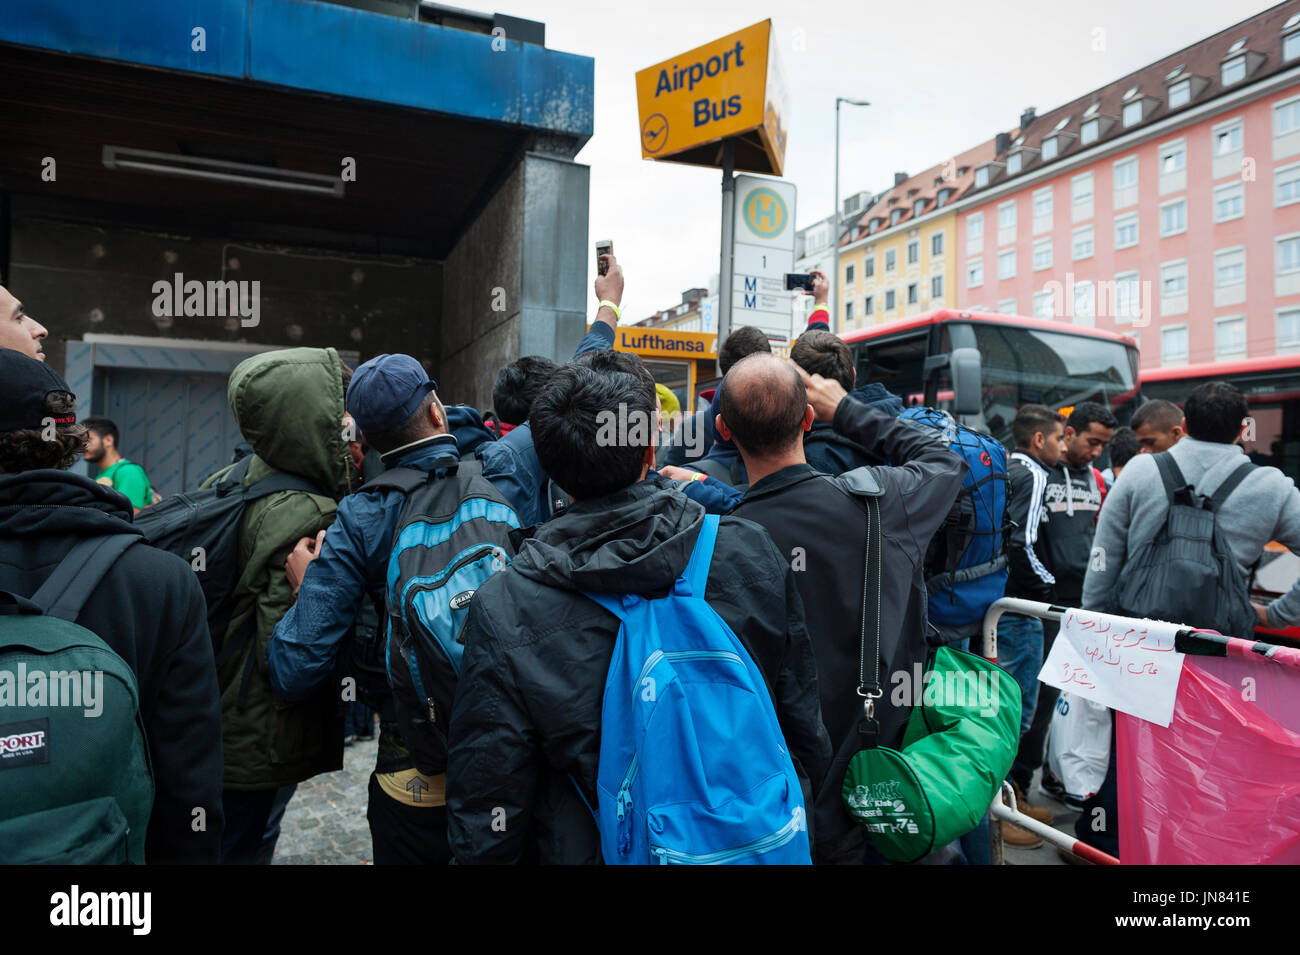 München, Deutschland - 7. September 2015: Eine Gruppe von Flüchtlingen aus Syrien am Münchner Hauptbahnhof. Sie sind auf der Suche nach Asyl in Europa. Stockfoto